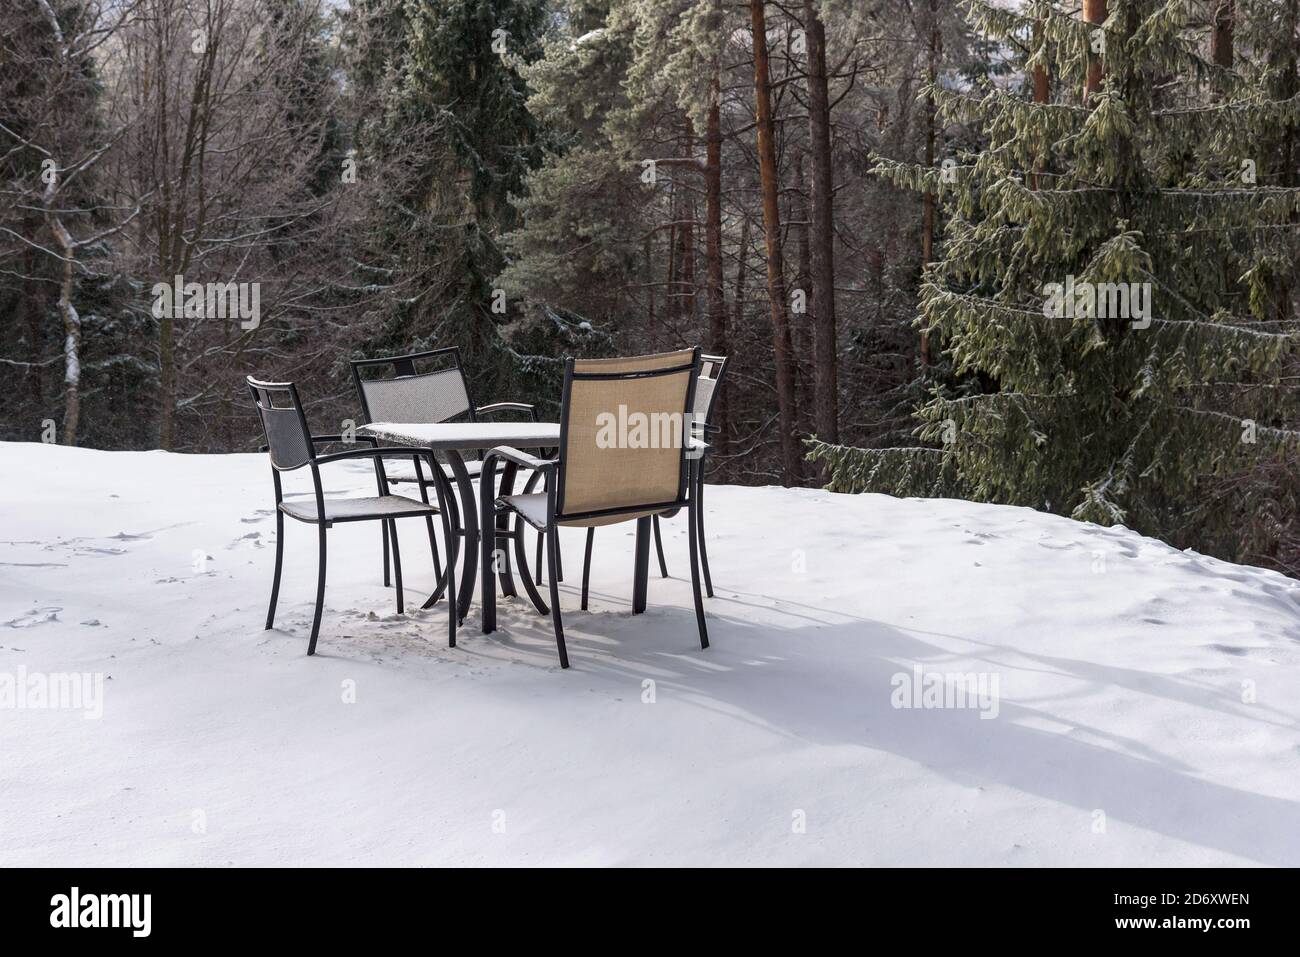 Table de restaurant vide et chaises sur une neige dans les montagnes Beski Sadecki, Krynica Zdroj, Pologne Banque D'Images